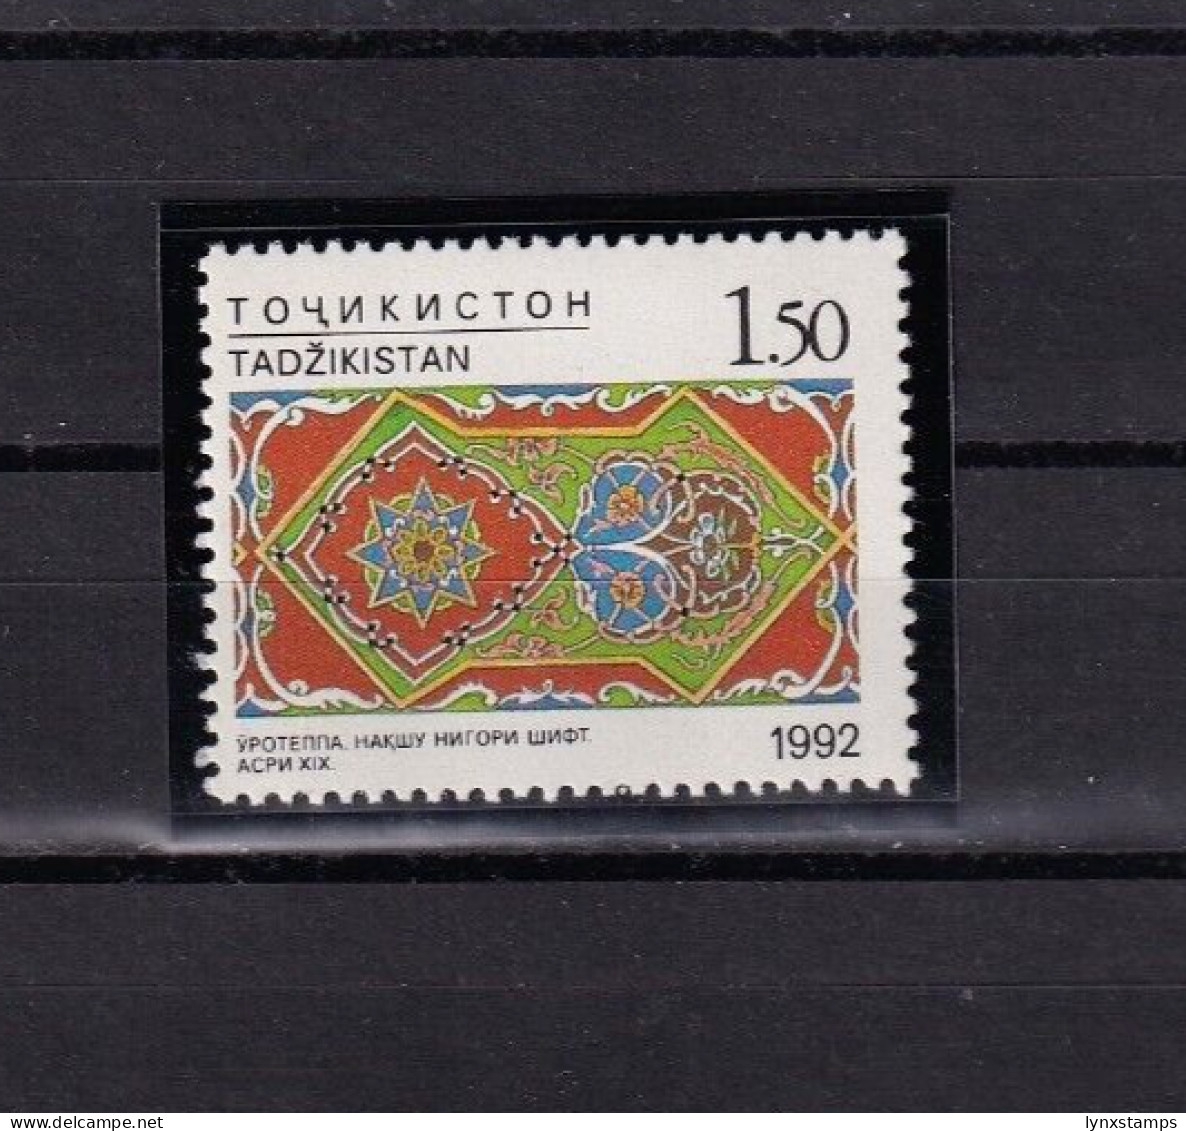 SA01 Tajikistan 1993 Handycraft Mint Stamp - Tadjikistan